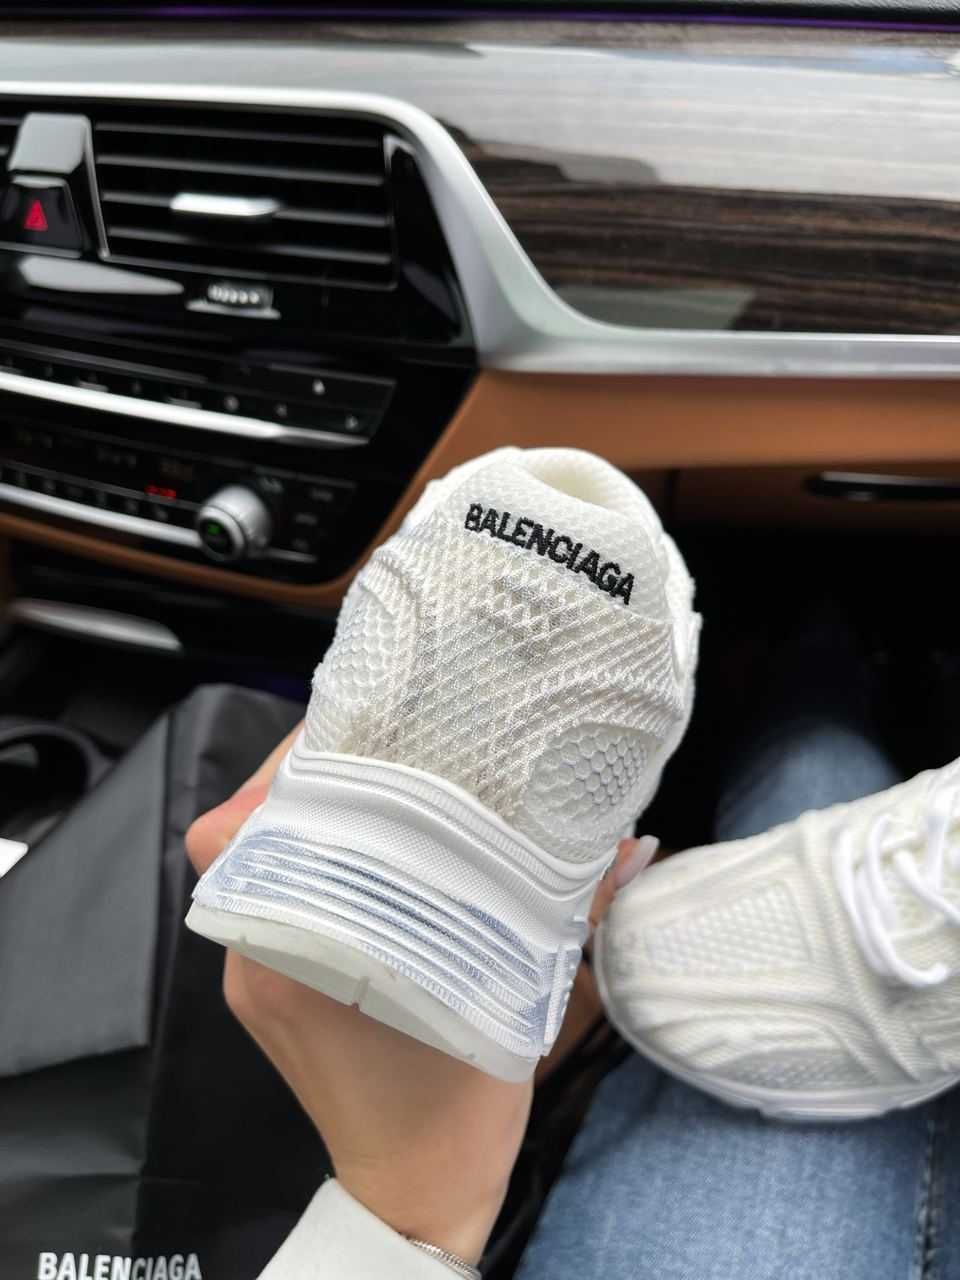 Жіночі кросівки Balenciaga Phantom білий 0888 РОЗПРОДАЖ